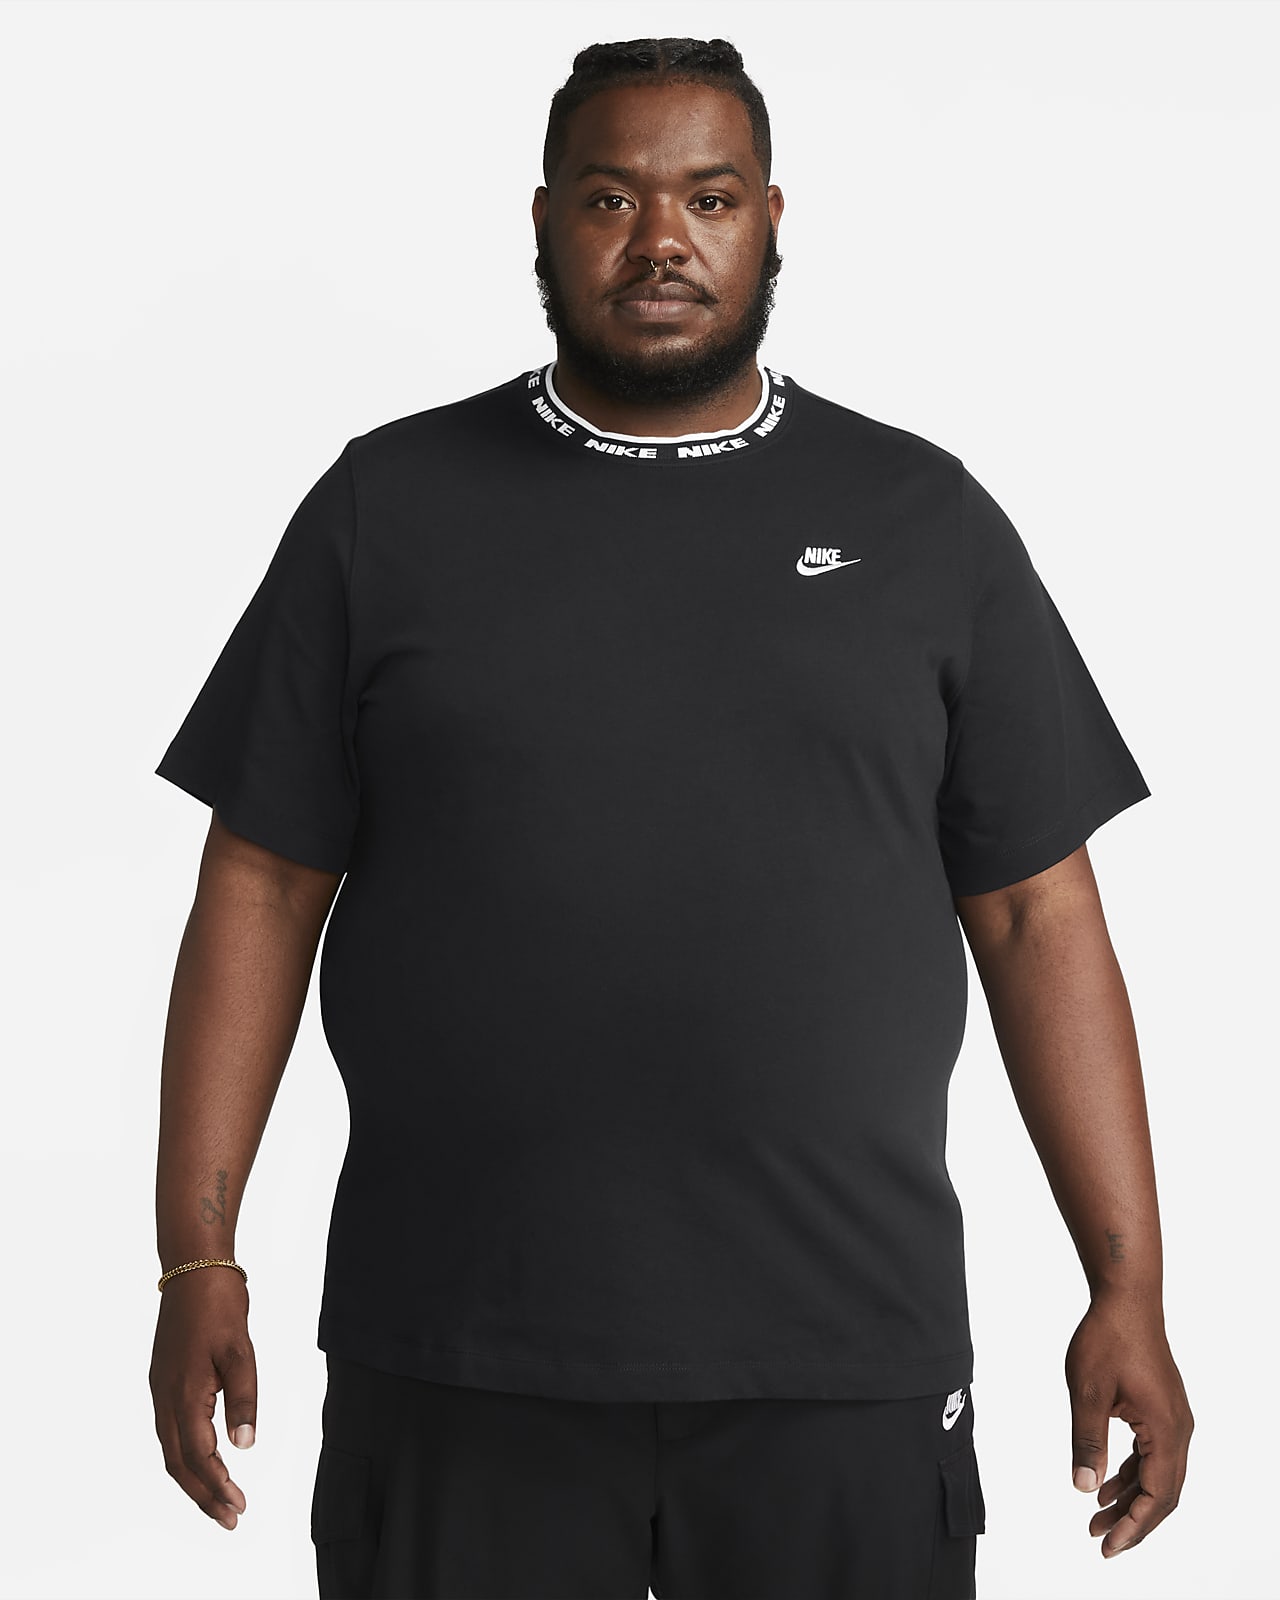 cocaína Humildad Punto de referencia Nike Sportswear Club Men's Short-Sleeve Top. Nike.com